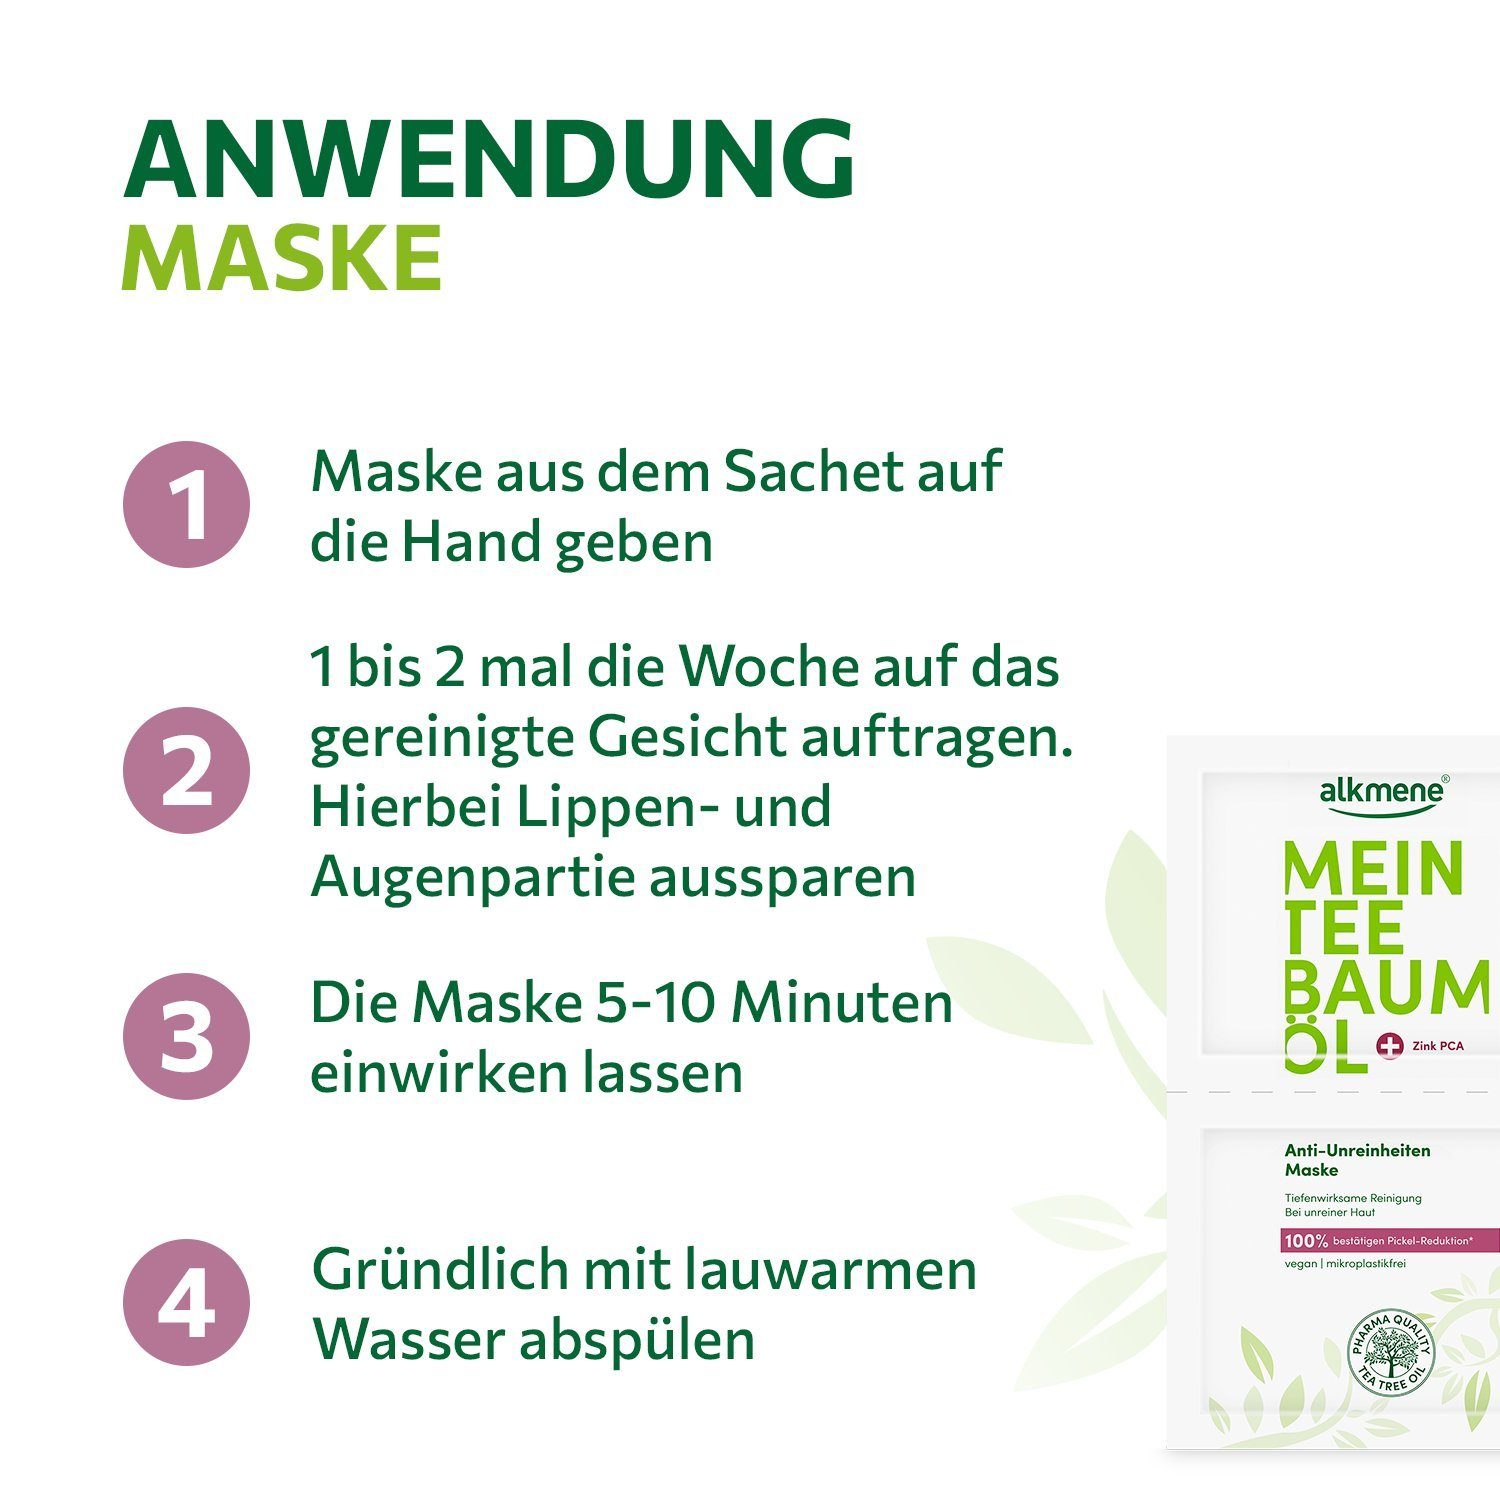 vegan, Unreinheiten - Gesichtsmaske - Pickel 5-tlg. alkmene 10x Reduktion bestätigen Anti 100% Maske